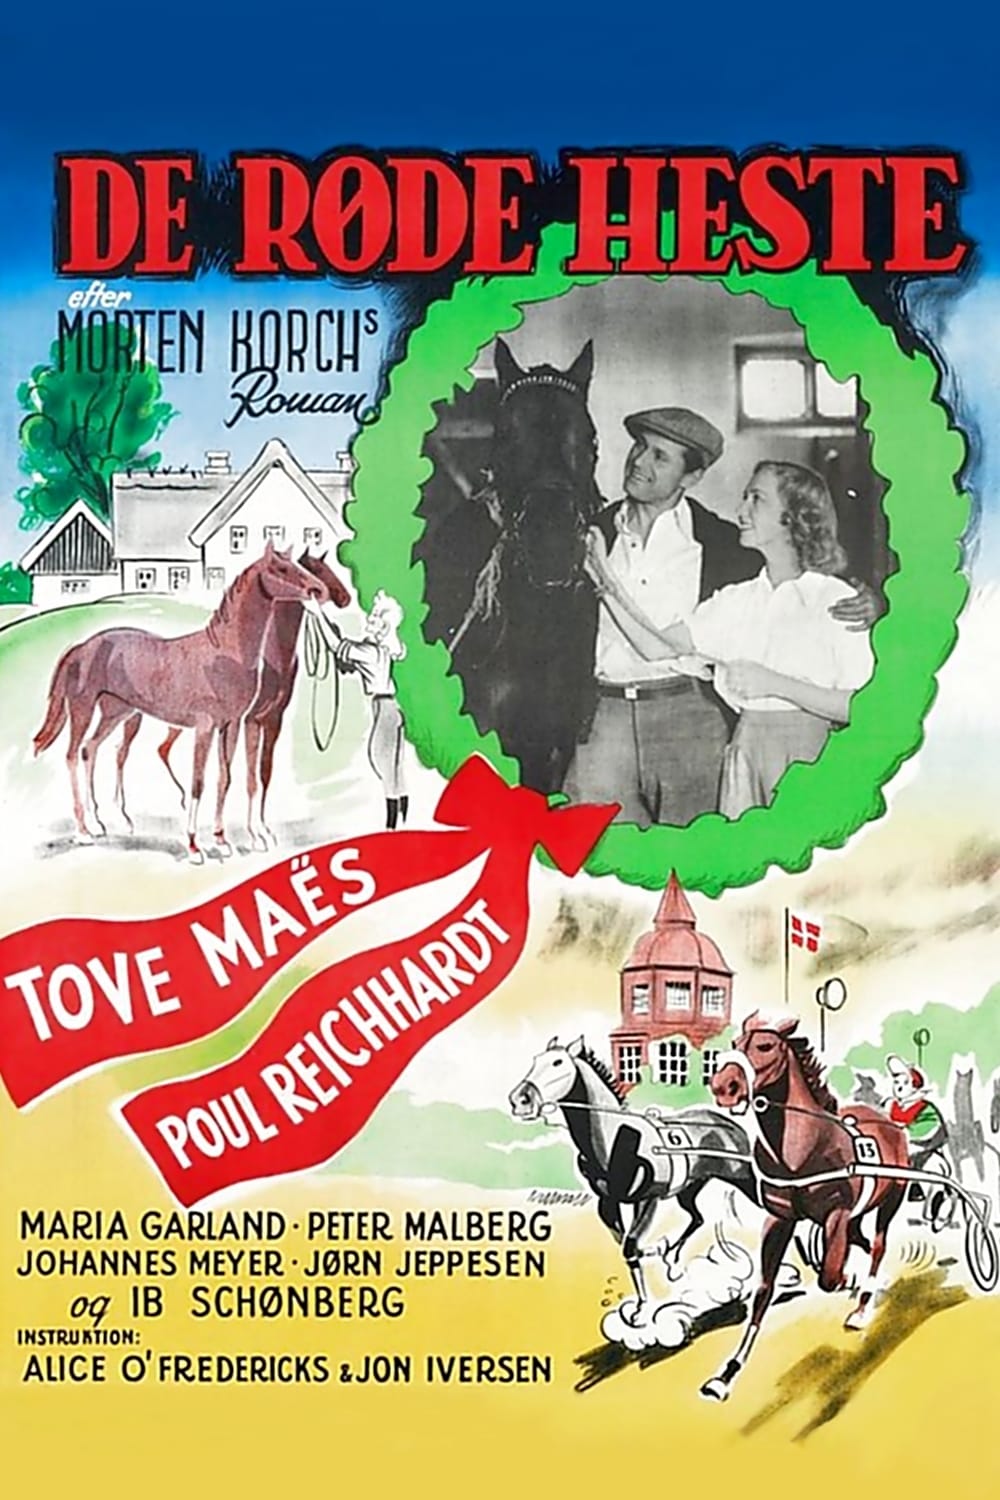 De røde heste (1950)